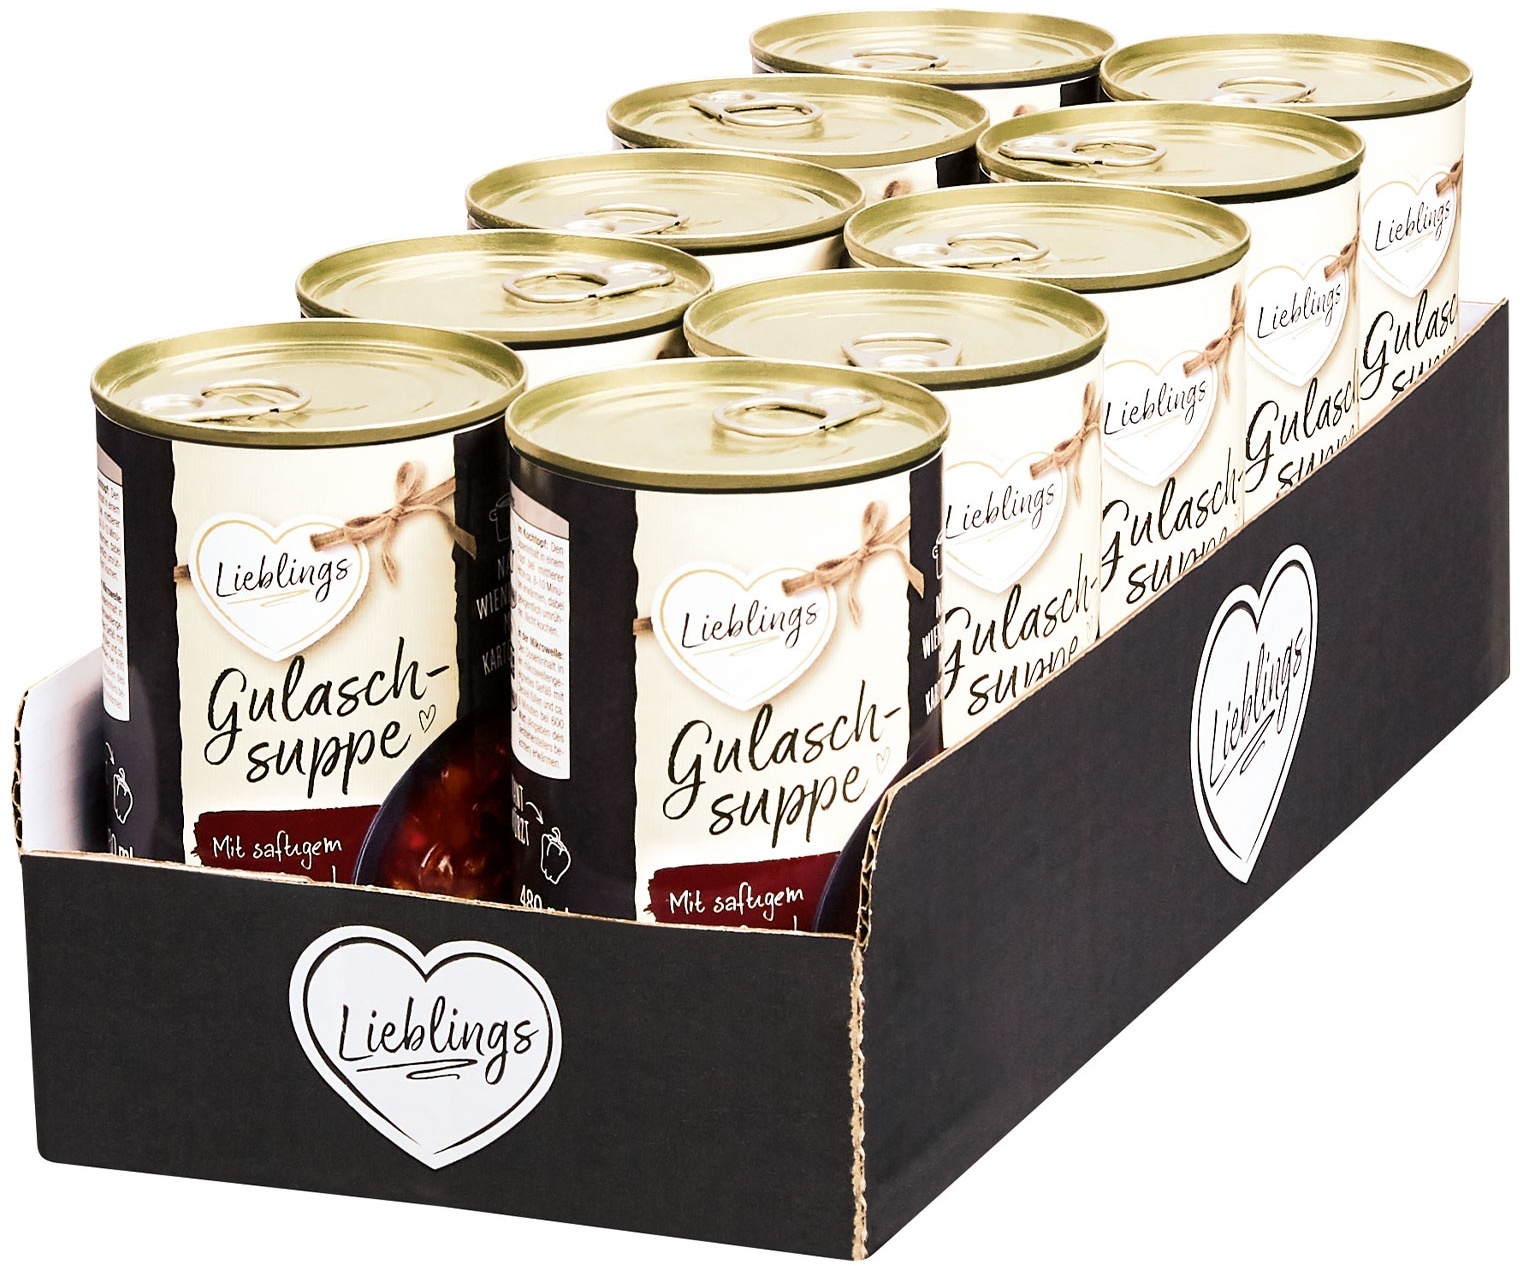 Lieblings Gulaschsuppe 480 ml, 10er Pack